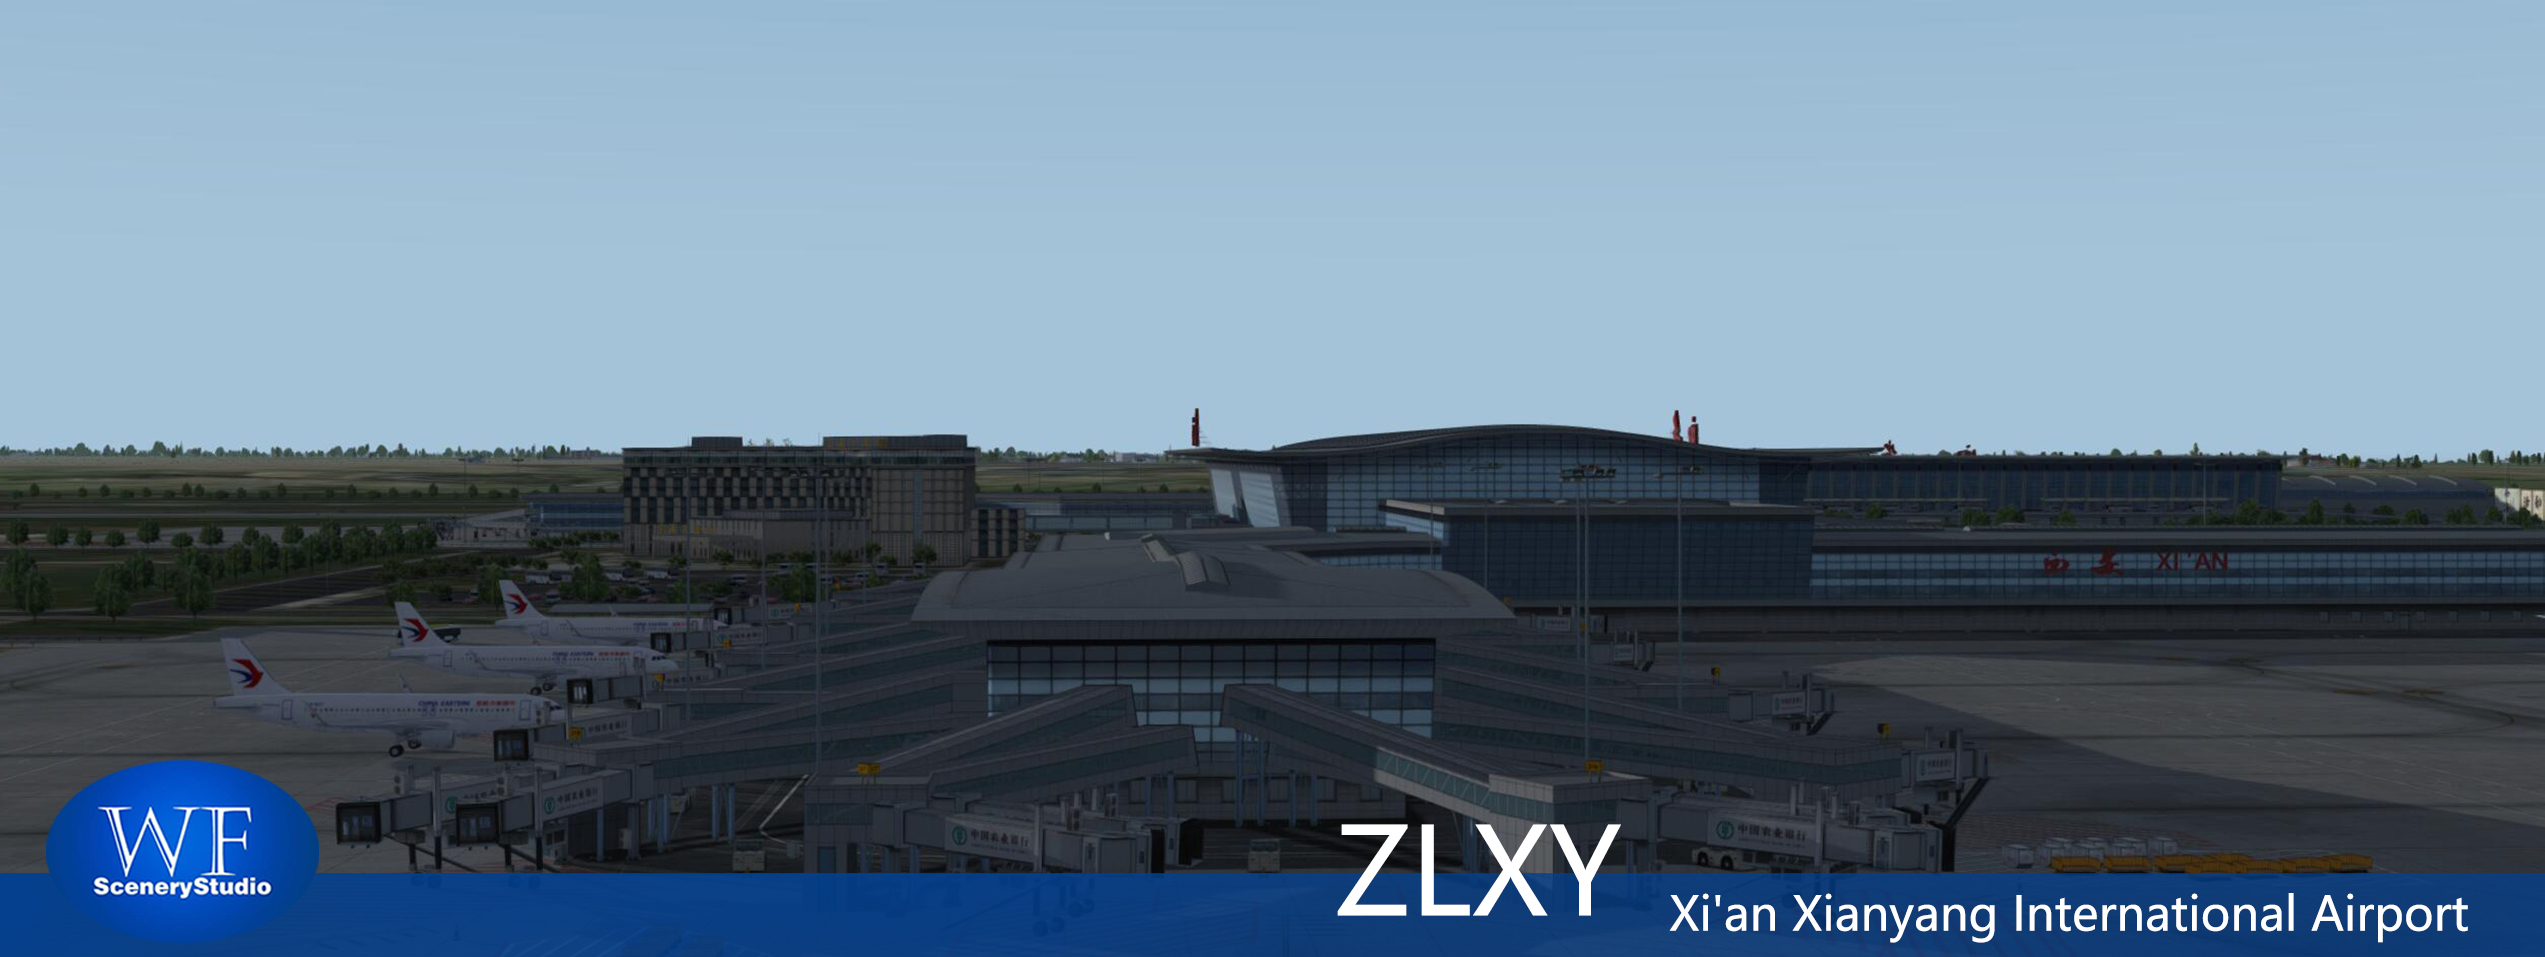 西安咸阳国际机场FSX和P3DV3 版本发布-9260 